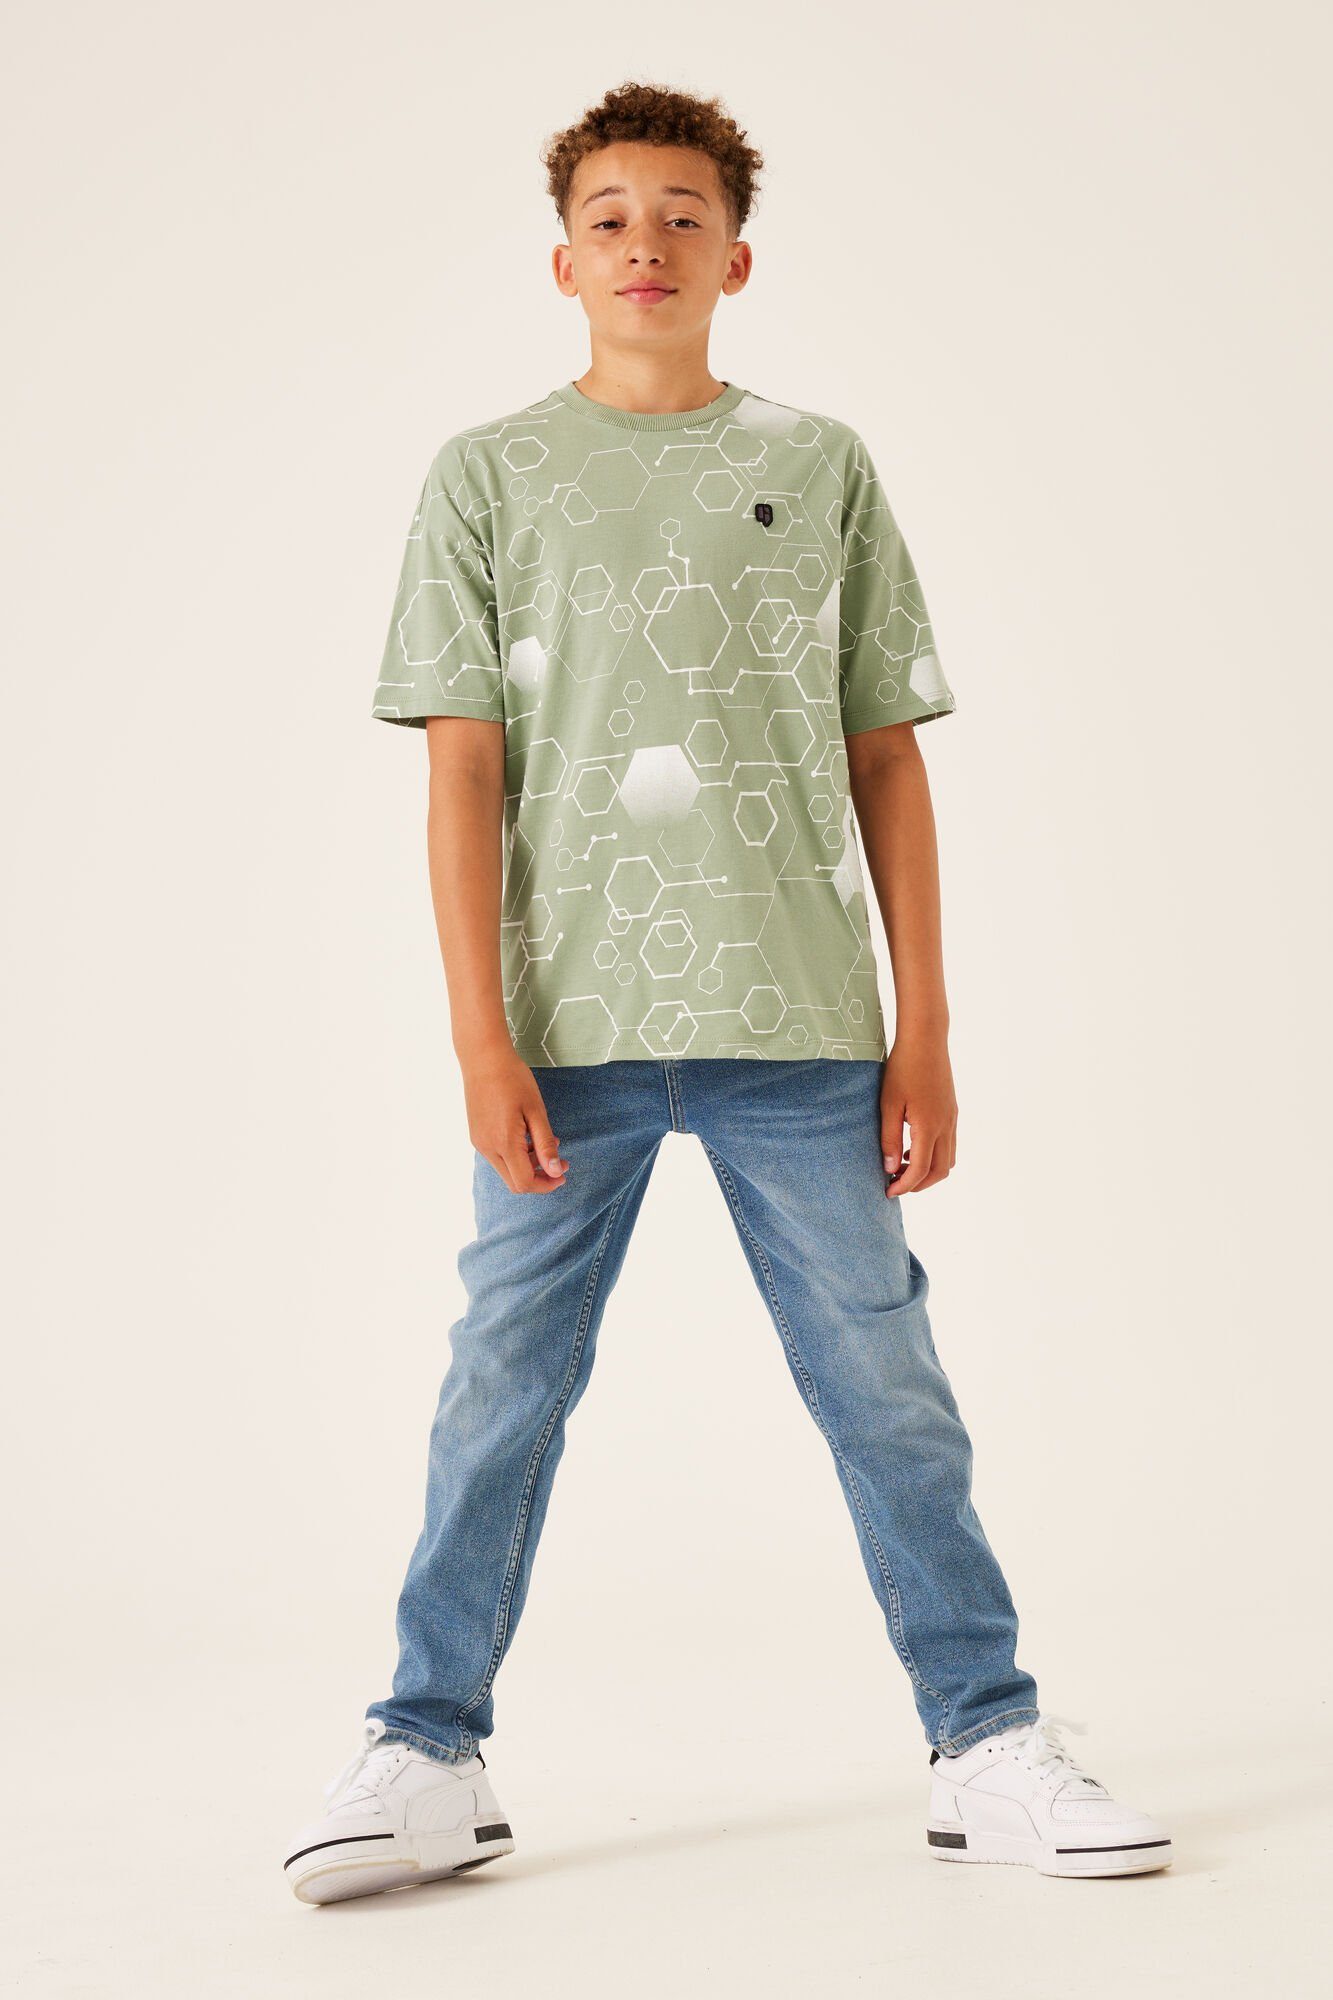 Garcia mit T-Shirt Muster geometrischem